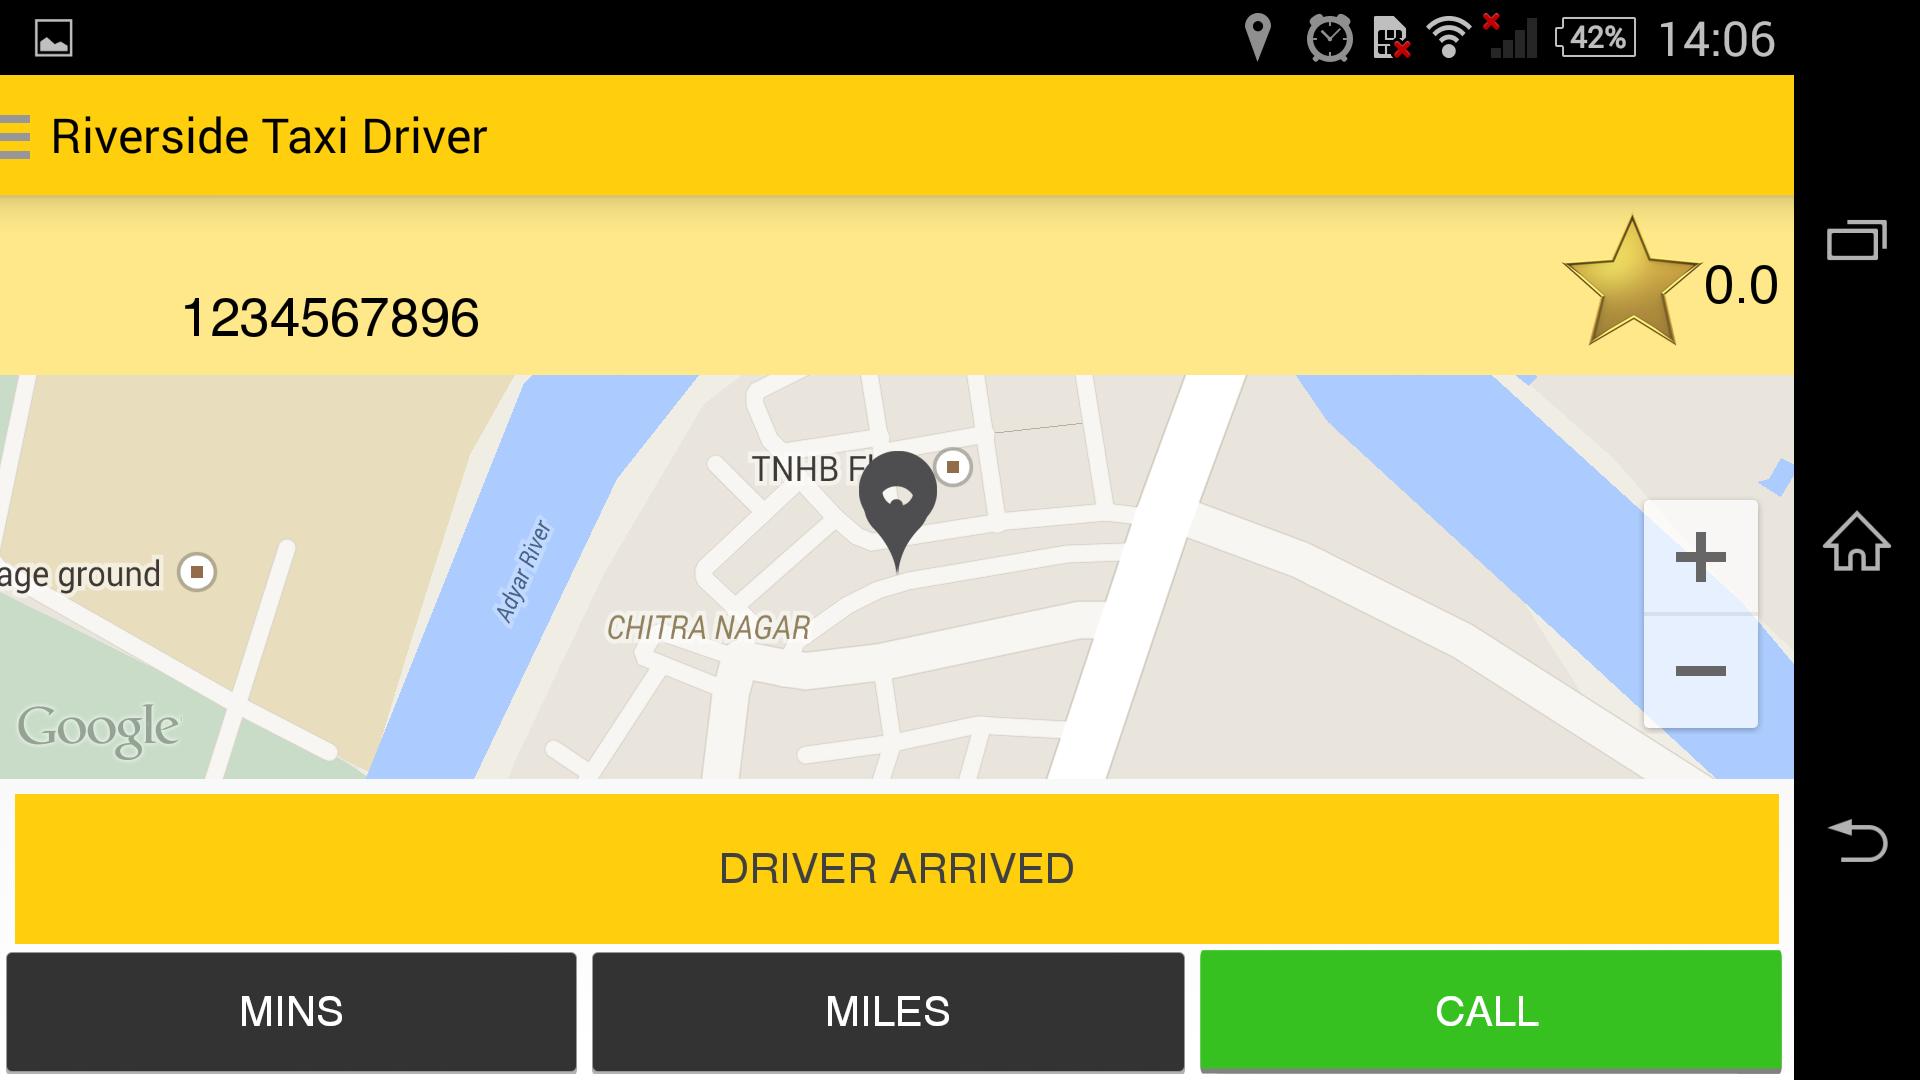 Обновить приложение такси. Такси драйвер rfhnf. Как в приложении такси драйвер менять парки. Такси драйвер в каком городе находится. Не показывает карту города такси драйвер.